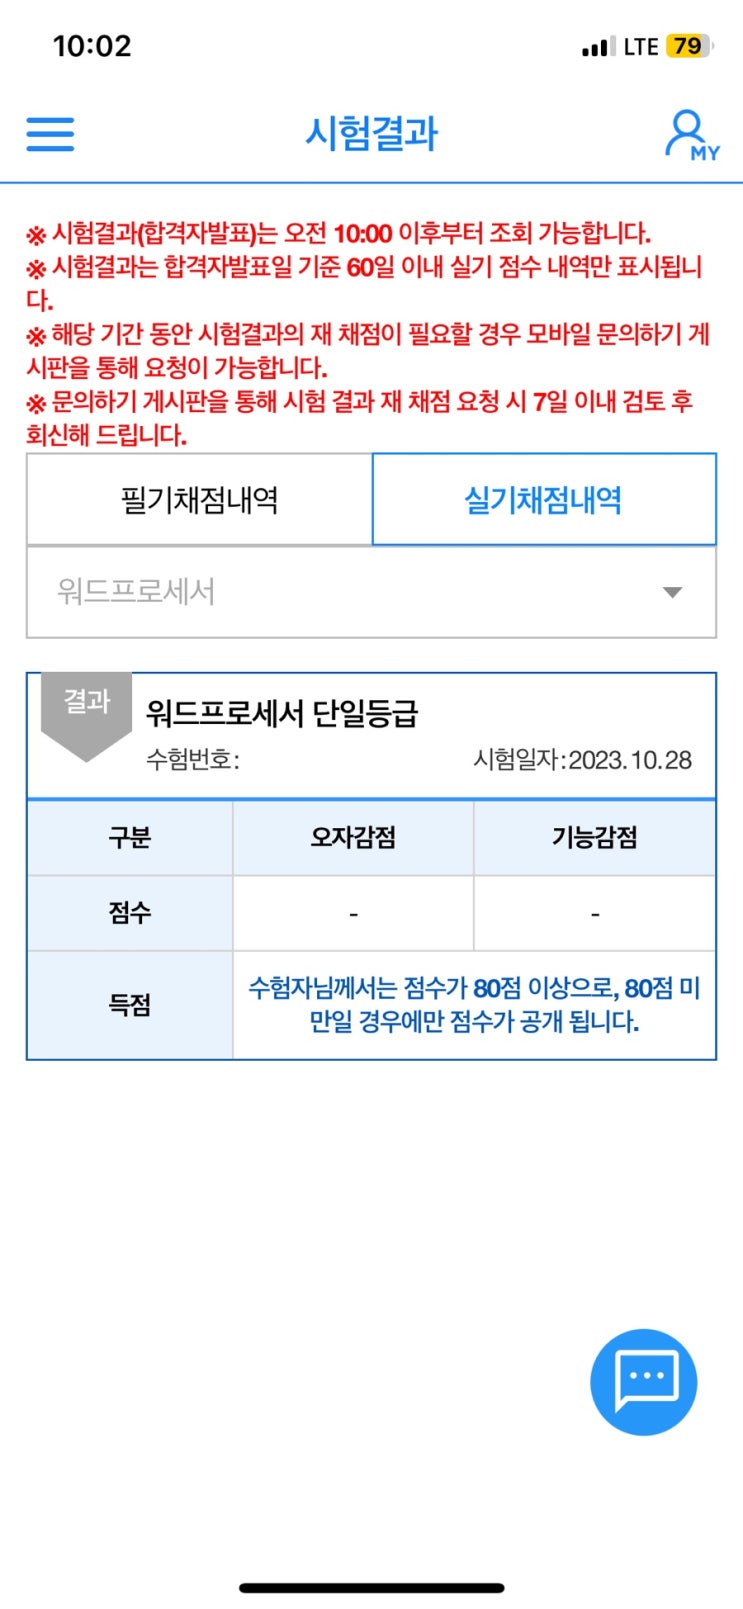 구라X 워드 실기 2주 독학 합격 찐후기ㅣ시나공 교재, 원형차트